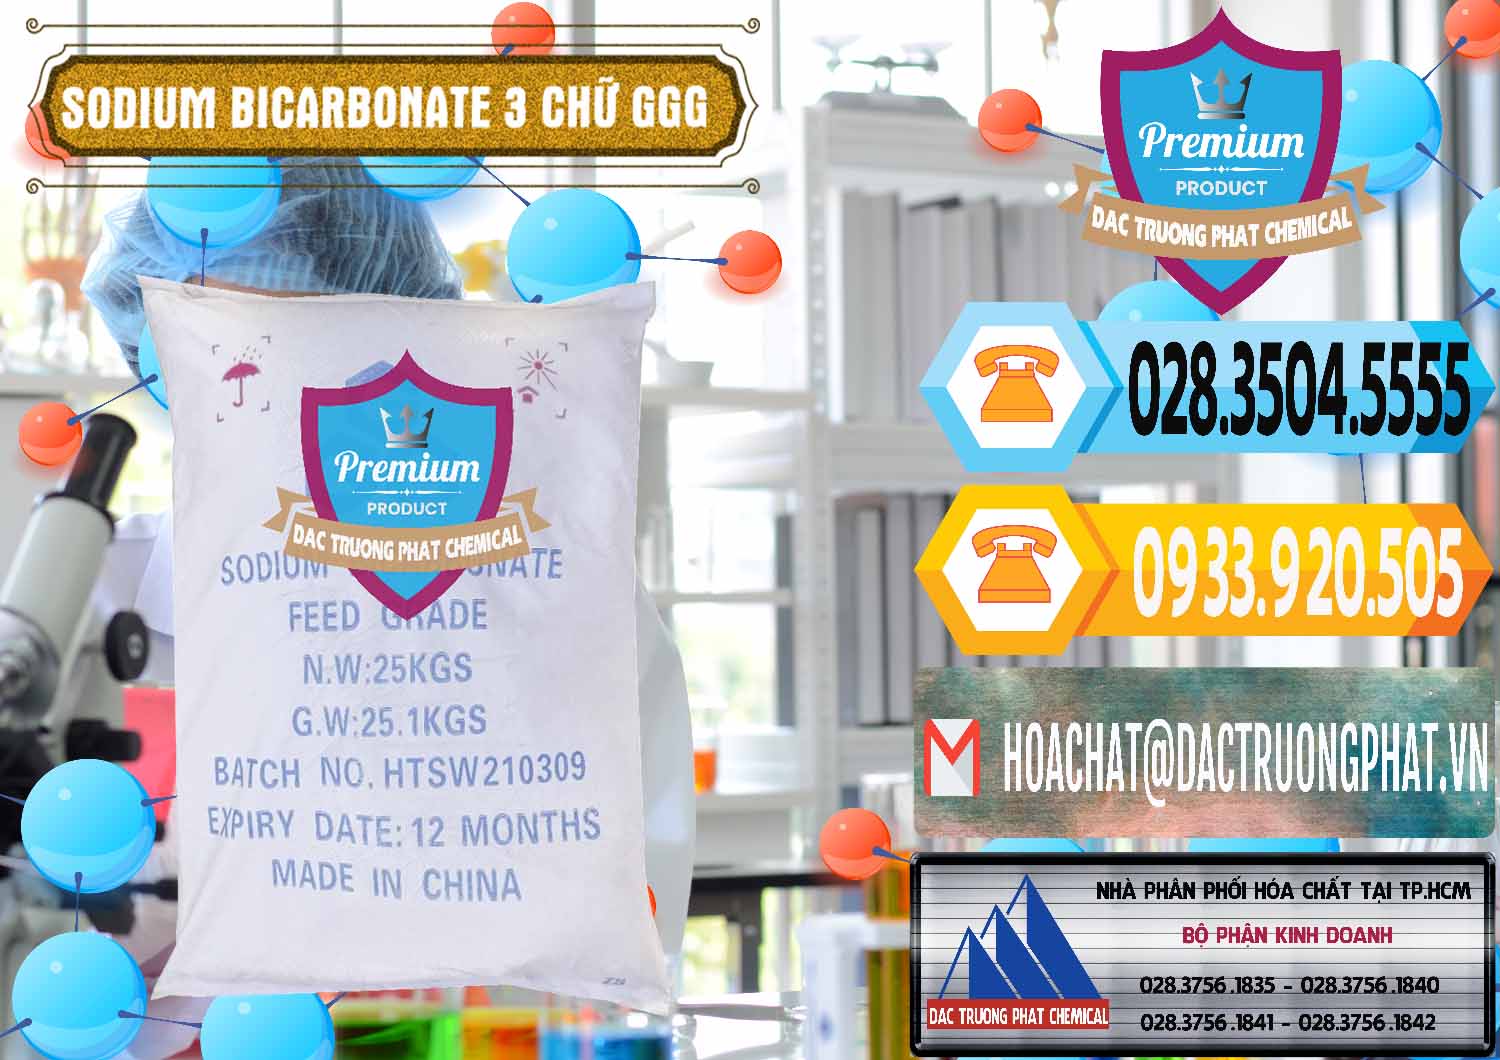 Bán _ phân phối Sodium Bicarbonate – Bicar NaHCO3 Food Grade 3 Chữ GGG Trung Quốc China - 0259 - Công ty cung cấp - bán hóa chất tại TP.HCM - hoachattayrua.net